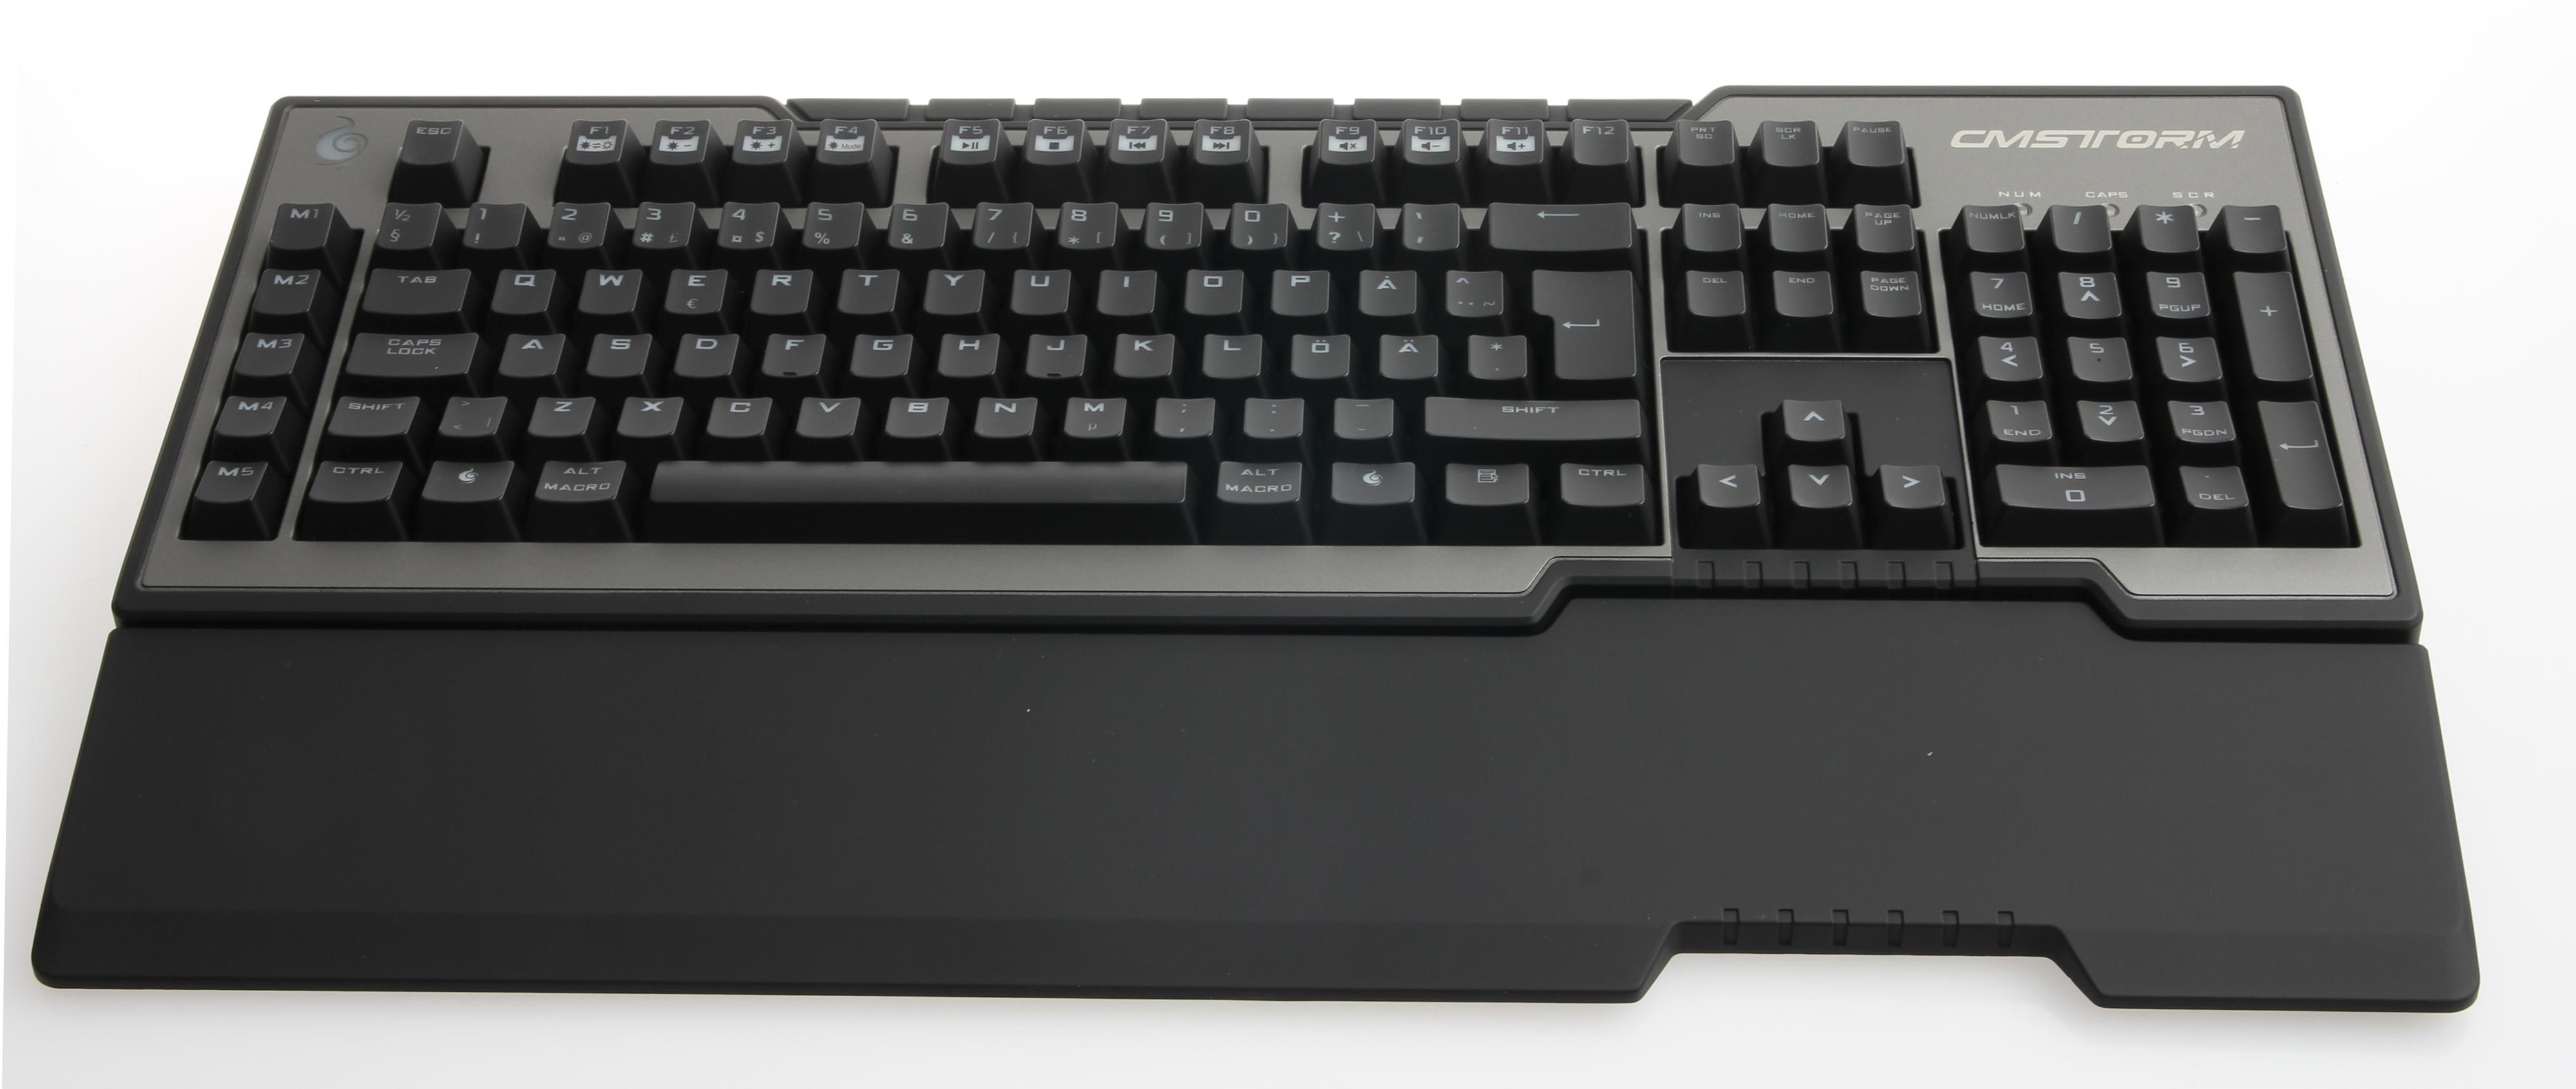 Cooler Master Storm Trigger er et ypperlig tastatur med svarte brytere.Foto: Niklas Plikk, Hardware.no